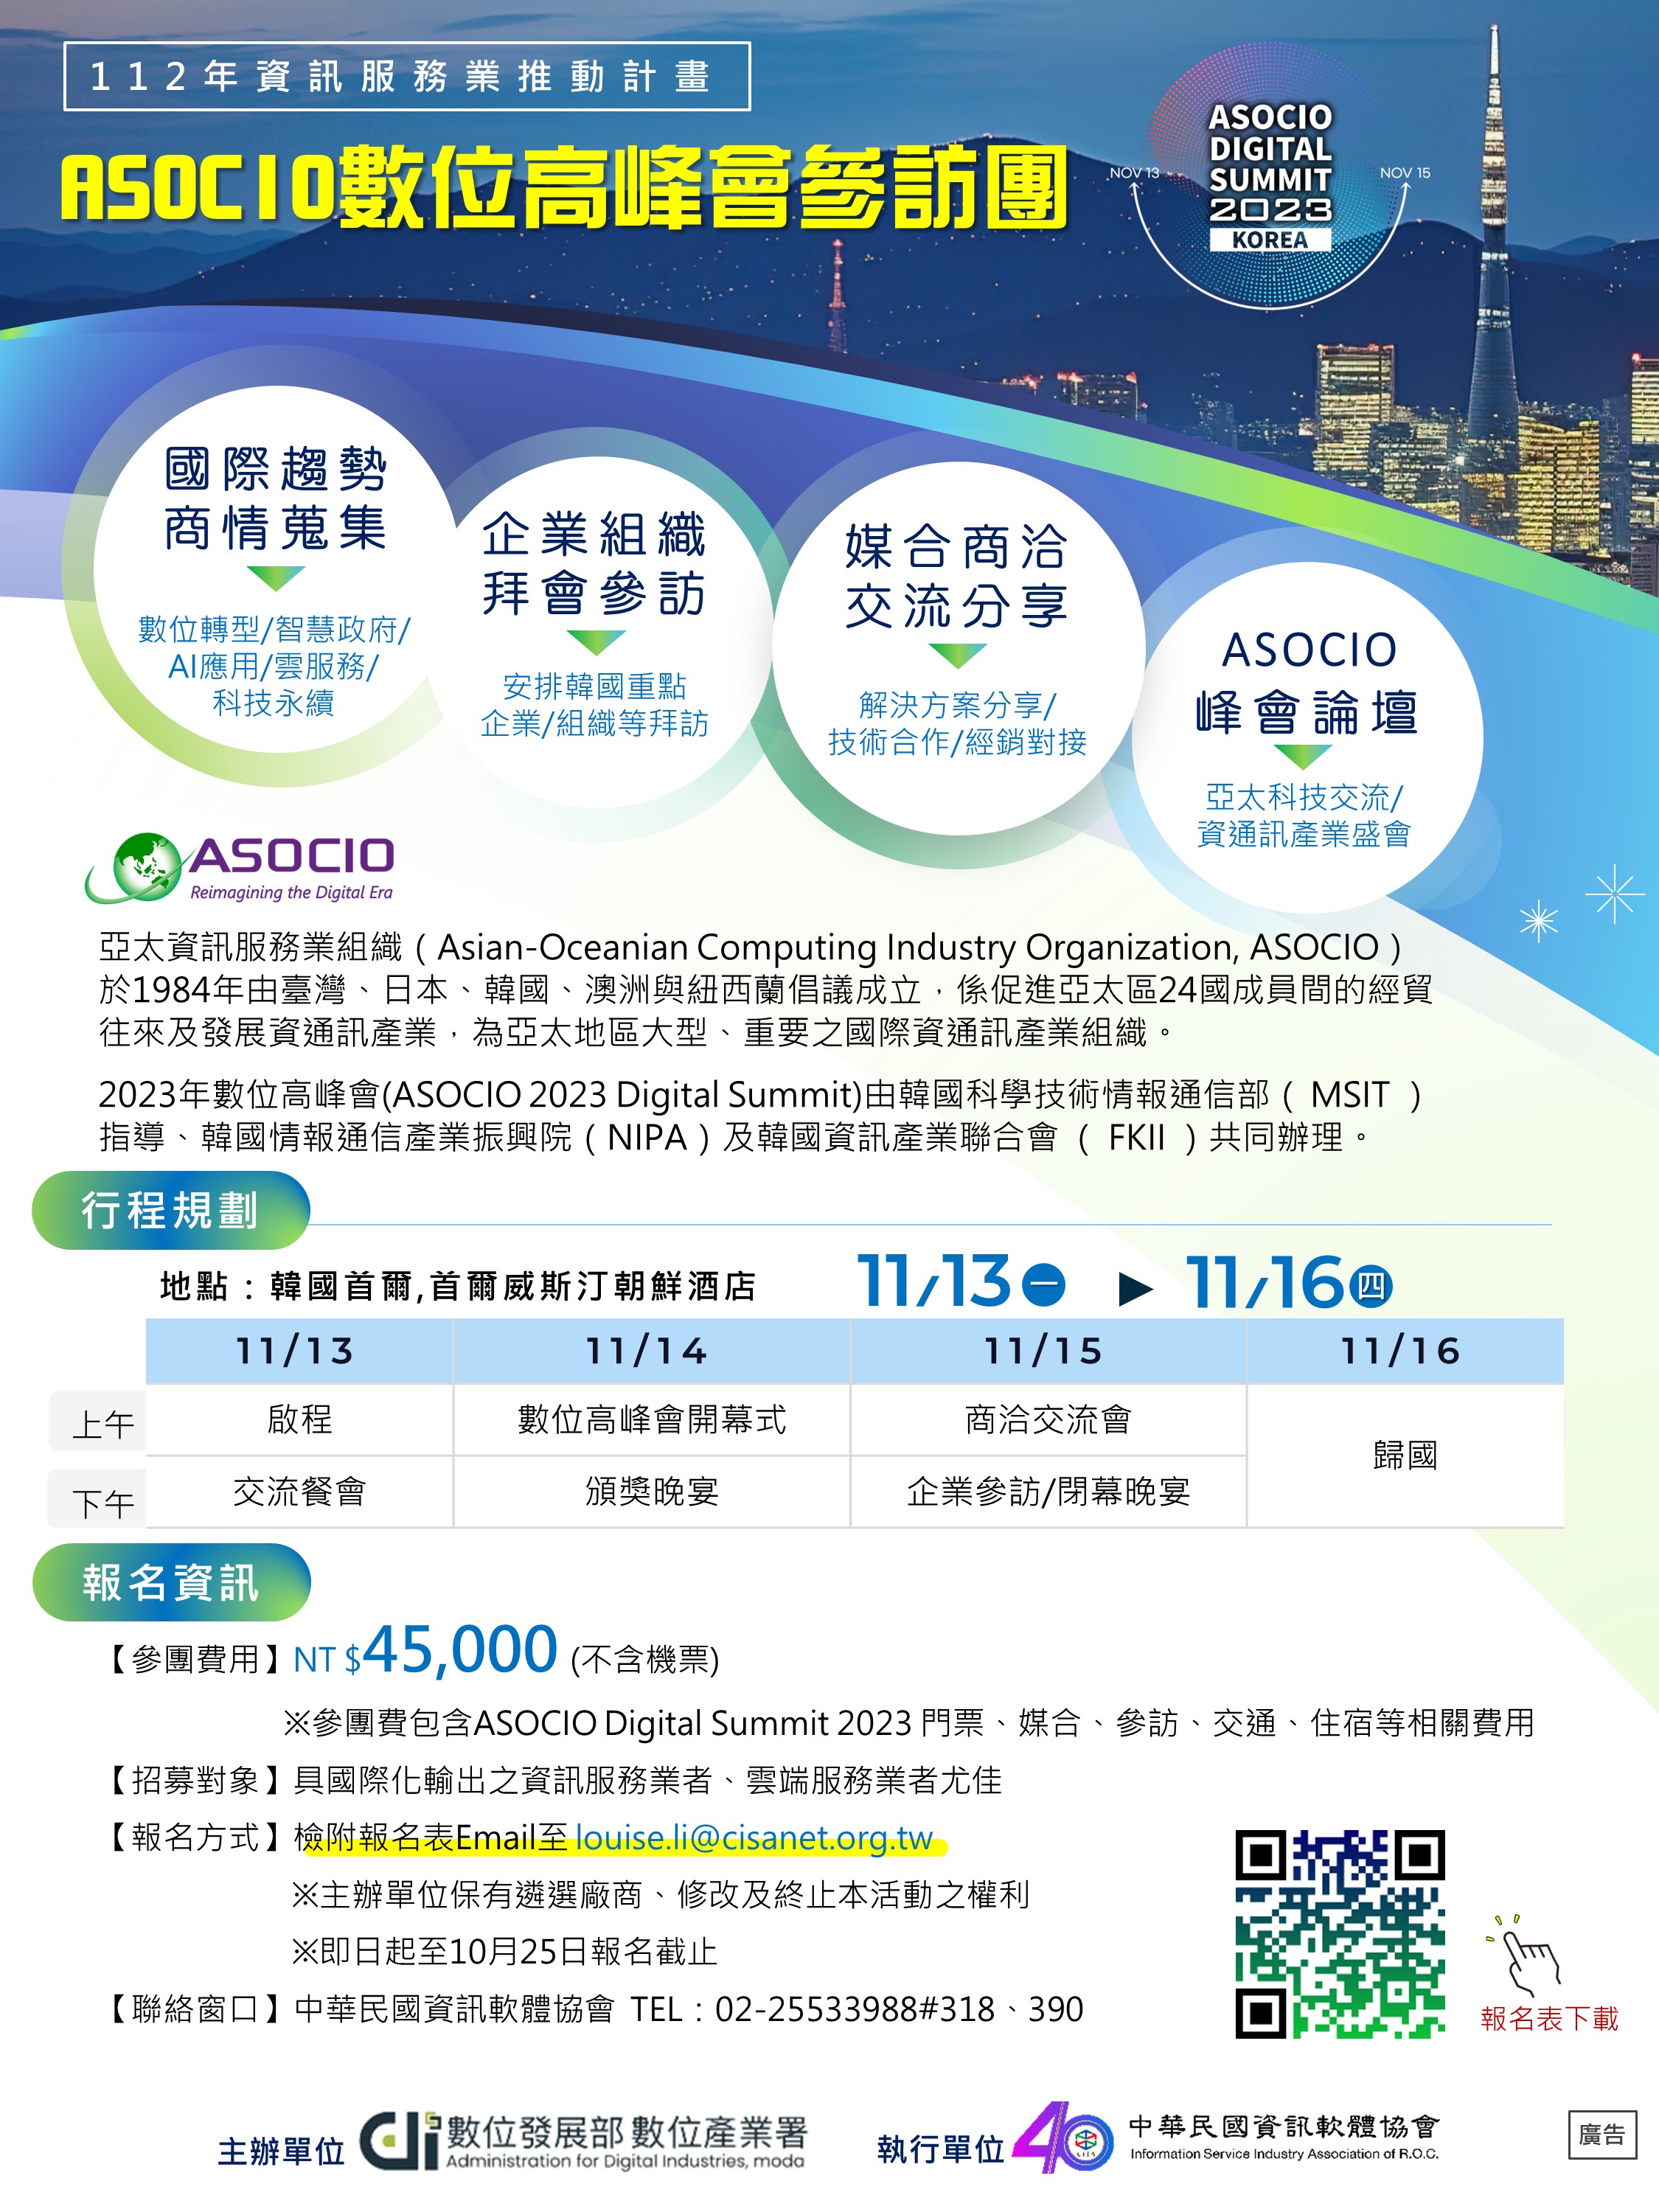 2023年亞太資服業數位高峰會(ASOCIO 2023 Digital Summit)參訪團